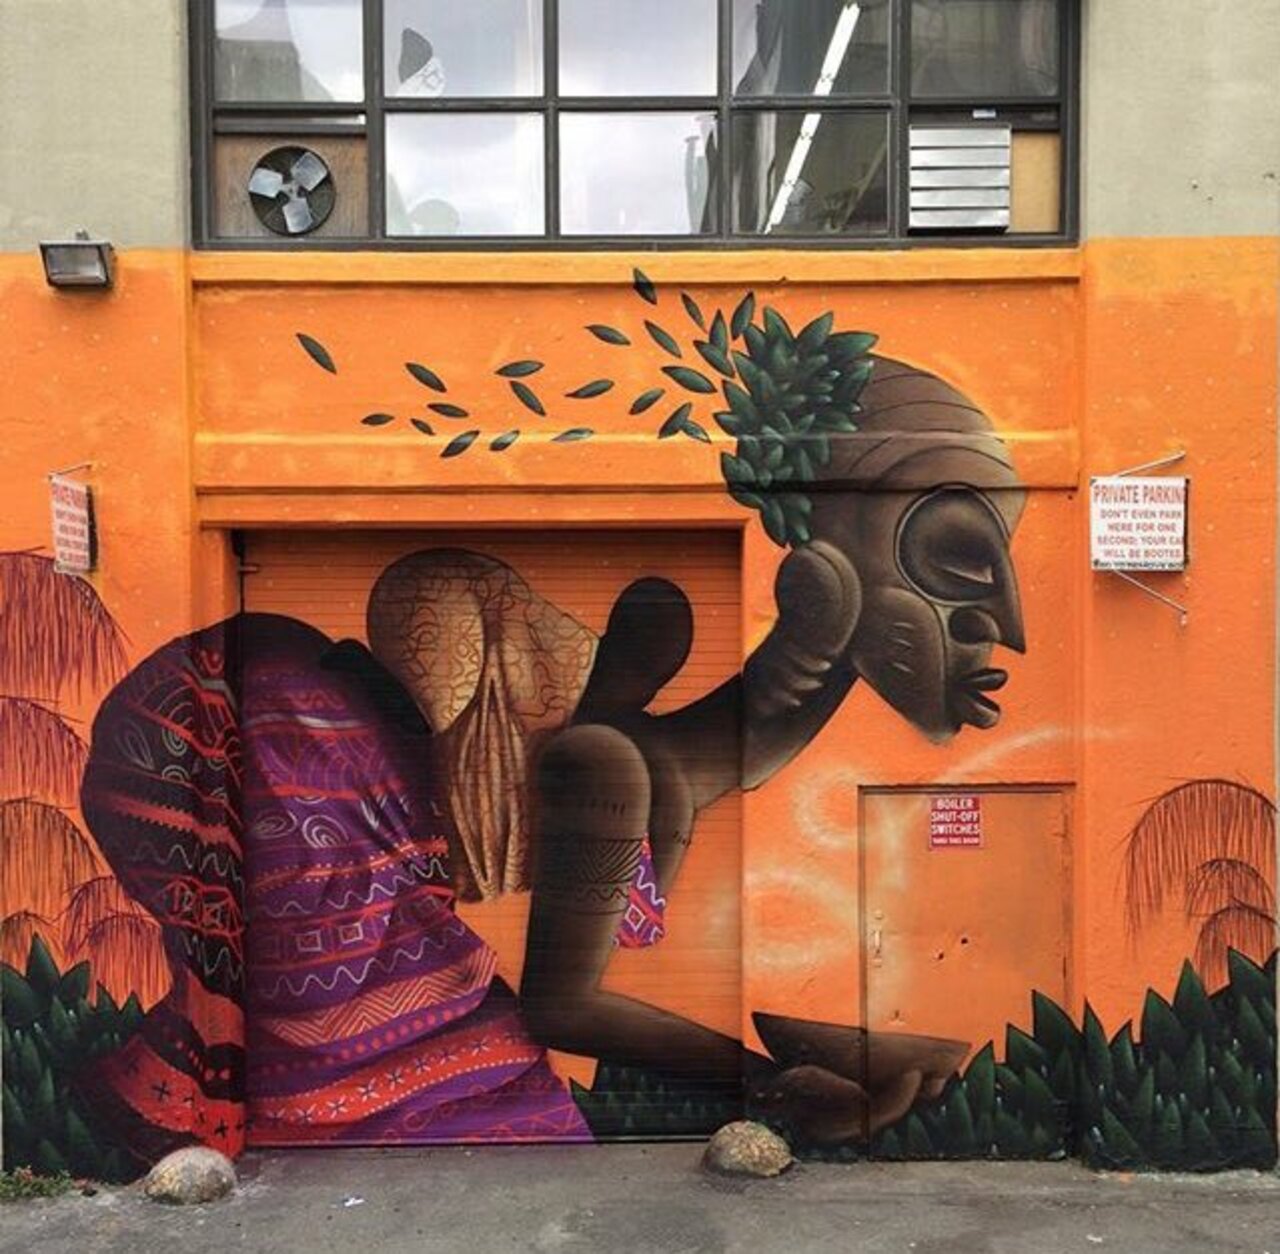 New Street Art by Alexandre Keto in NYC 

#art #graffiti #mural #streetart https://t.co/i4v3eswVnD